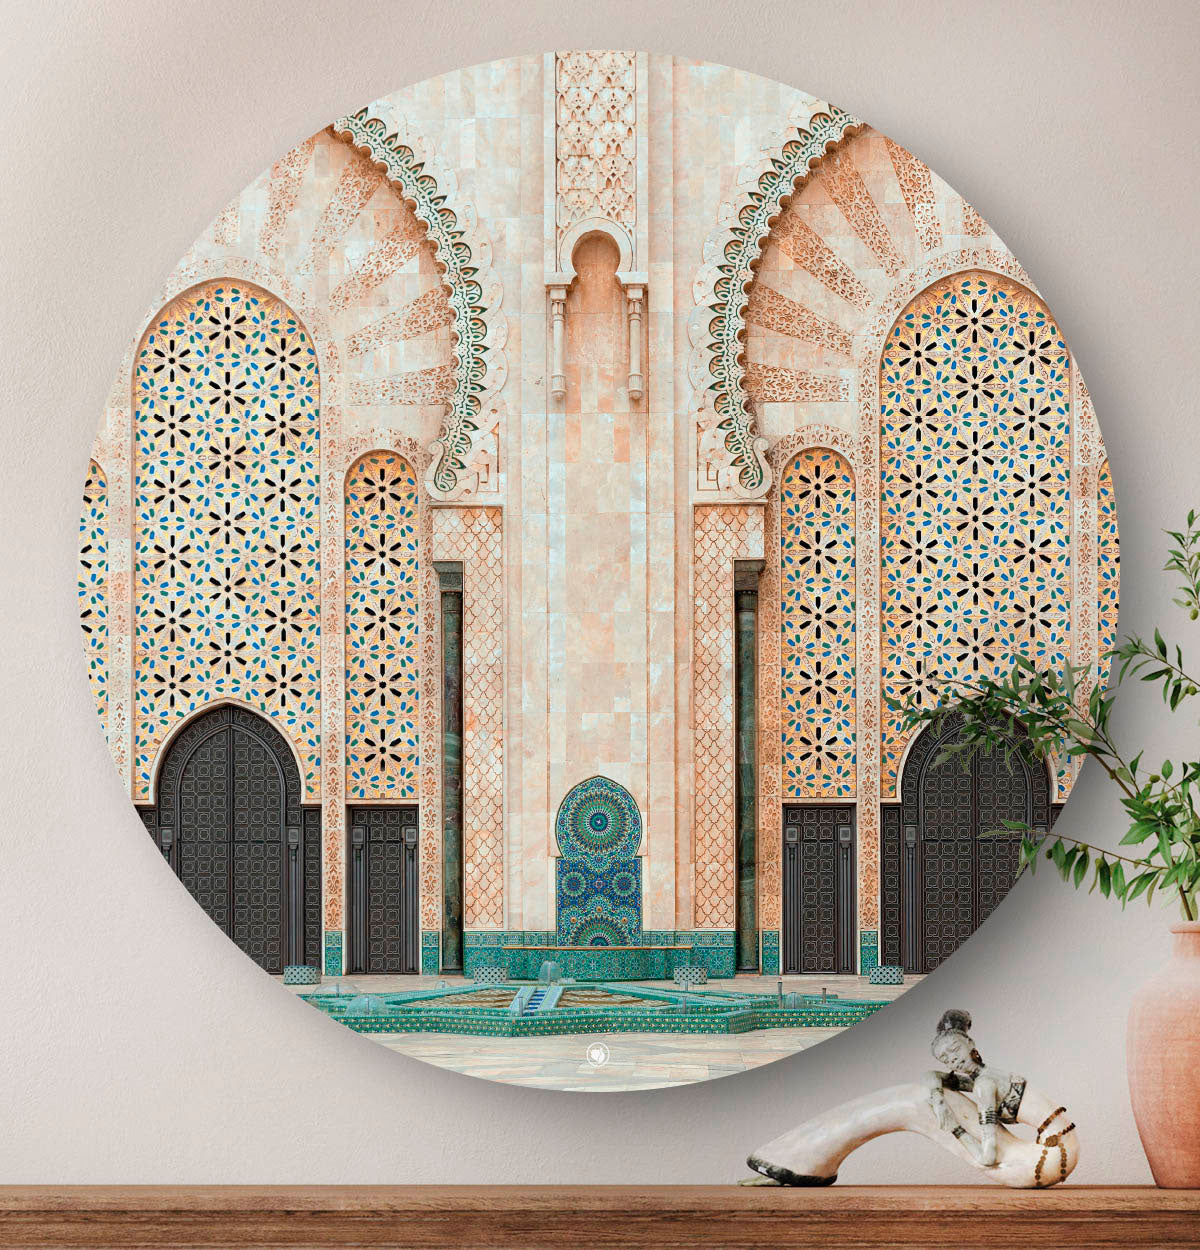 Wanddecoratie met architecture in Casablanca.